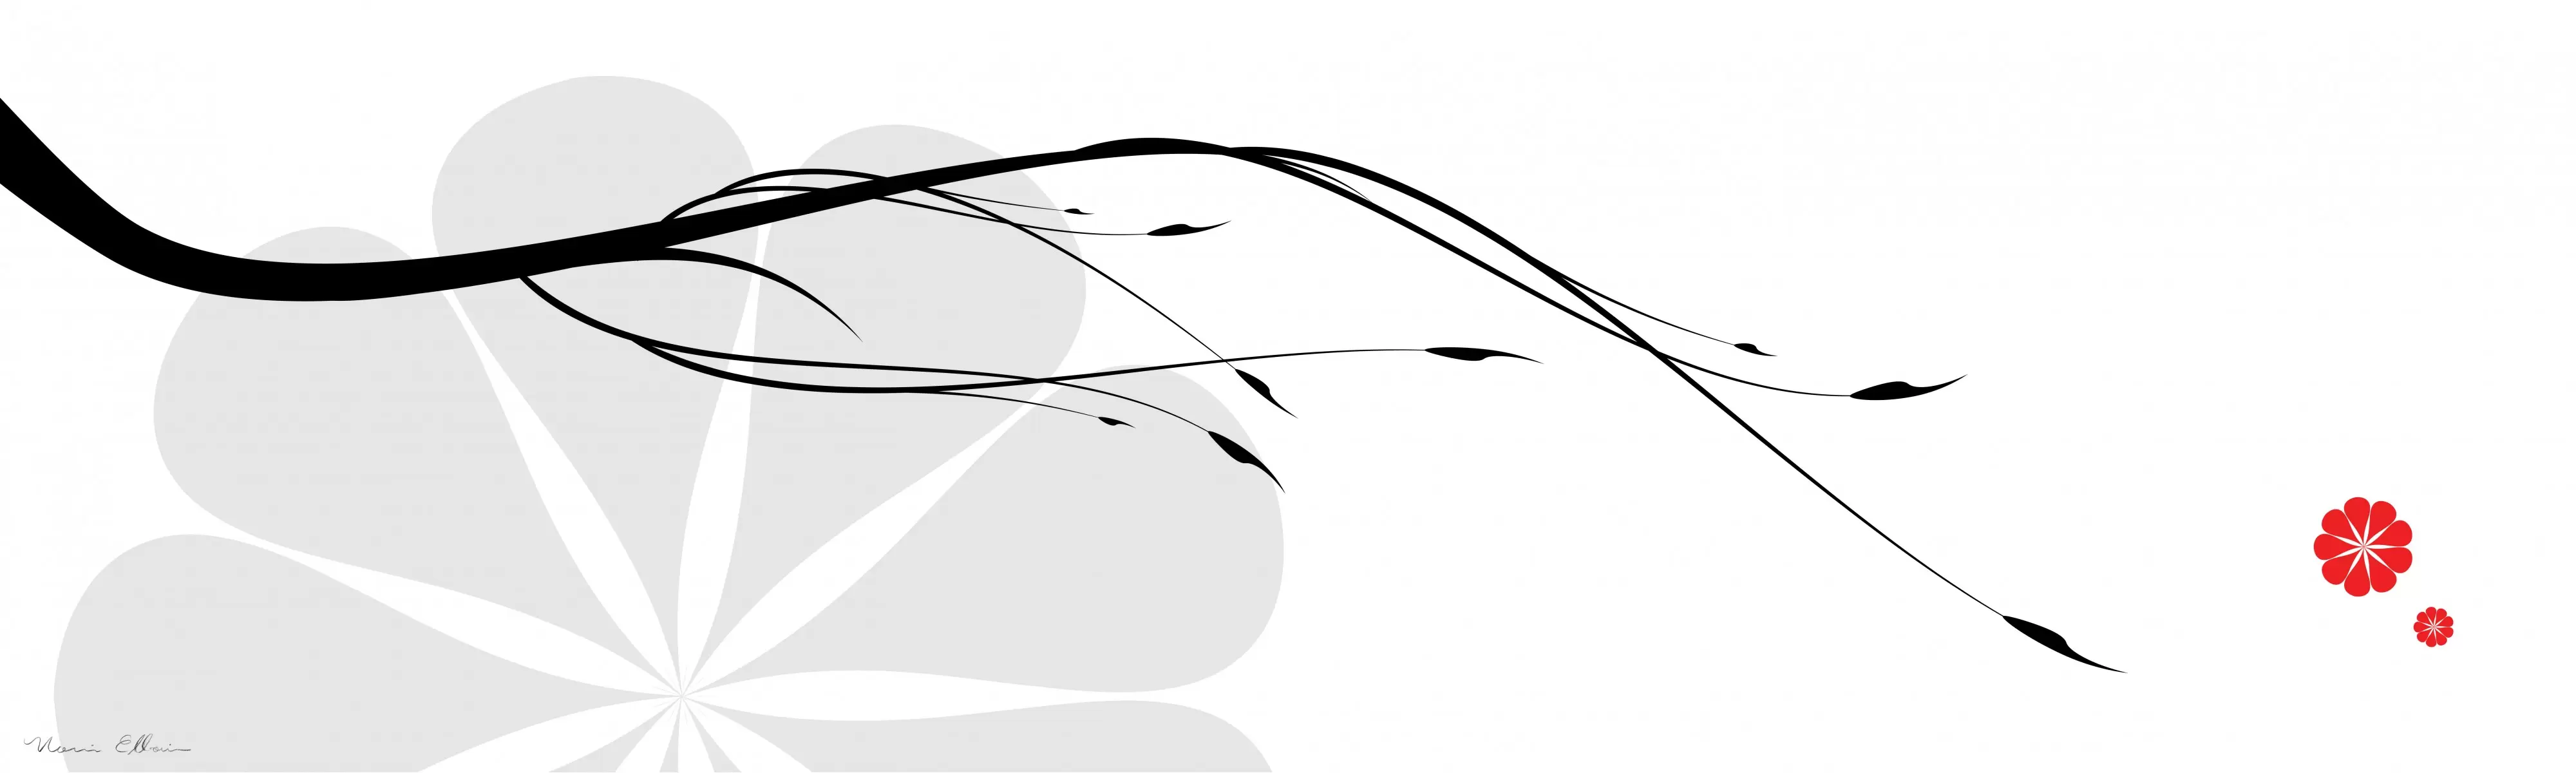 ענף יפני רקע לבן - נעמי עיצובים - תמונות לסלון רגוע ונעים אבסטרקט פרחוני ובוטני תמונות בחלקים  - מק''ט: 159884